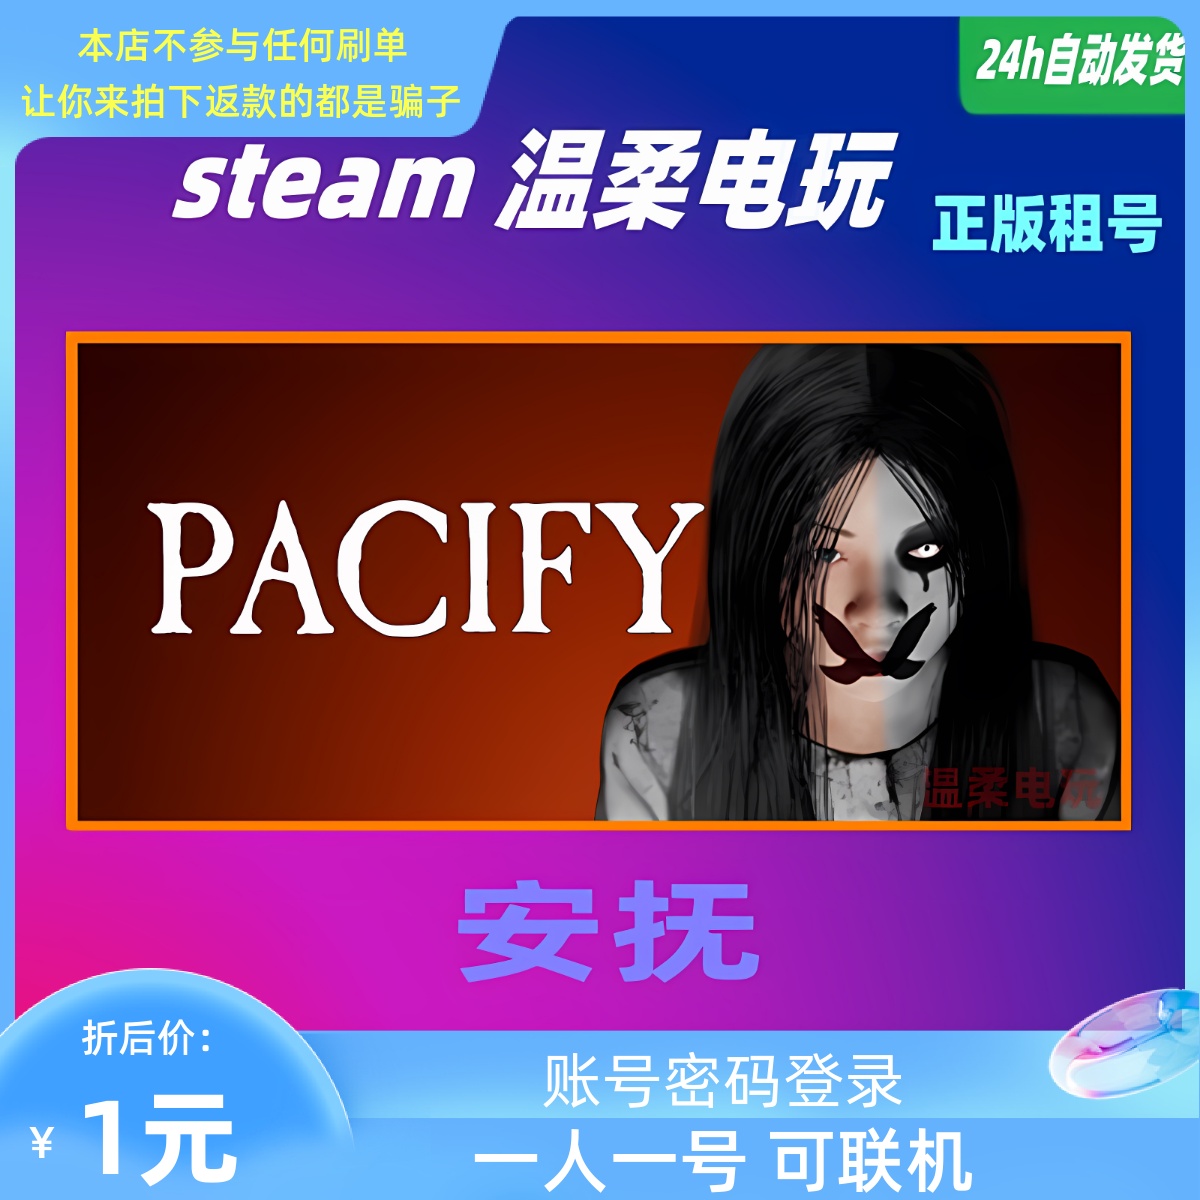 安抚 STEAM正版游戏租号 Pacify 恐怖 在线 联机 温柔电玩